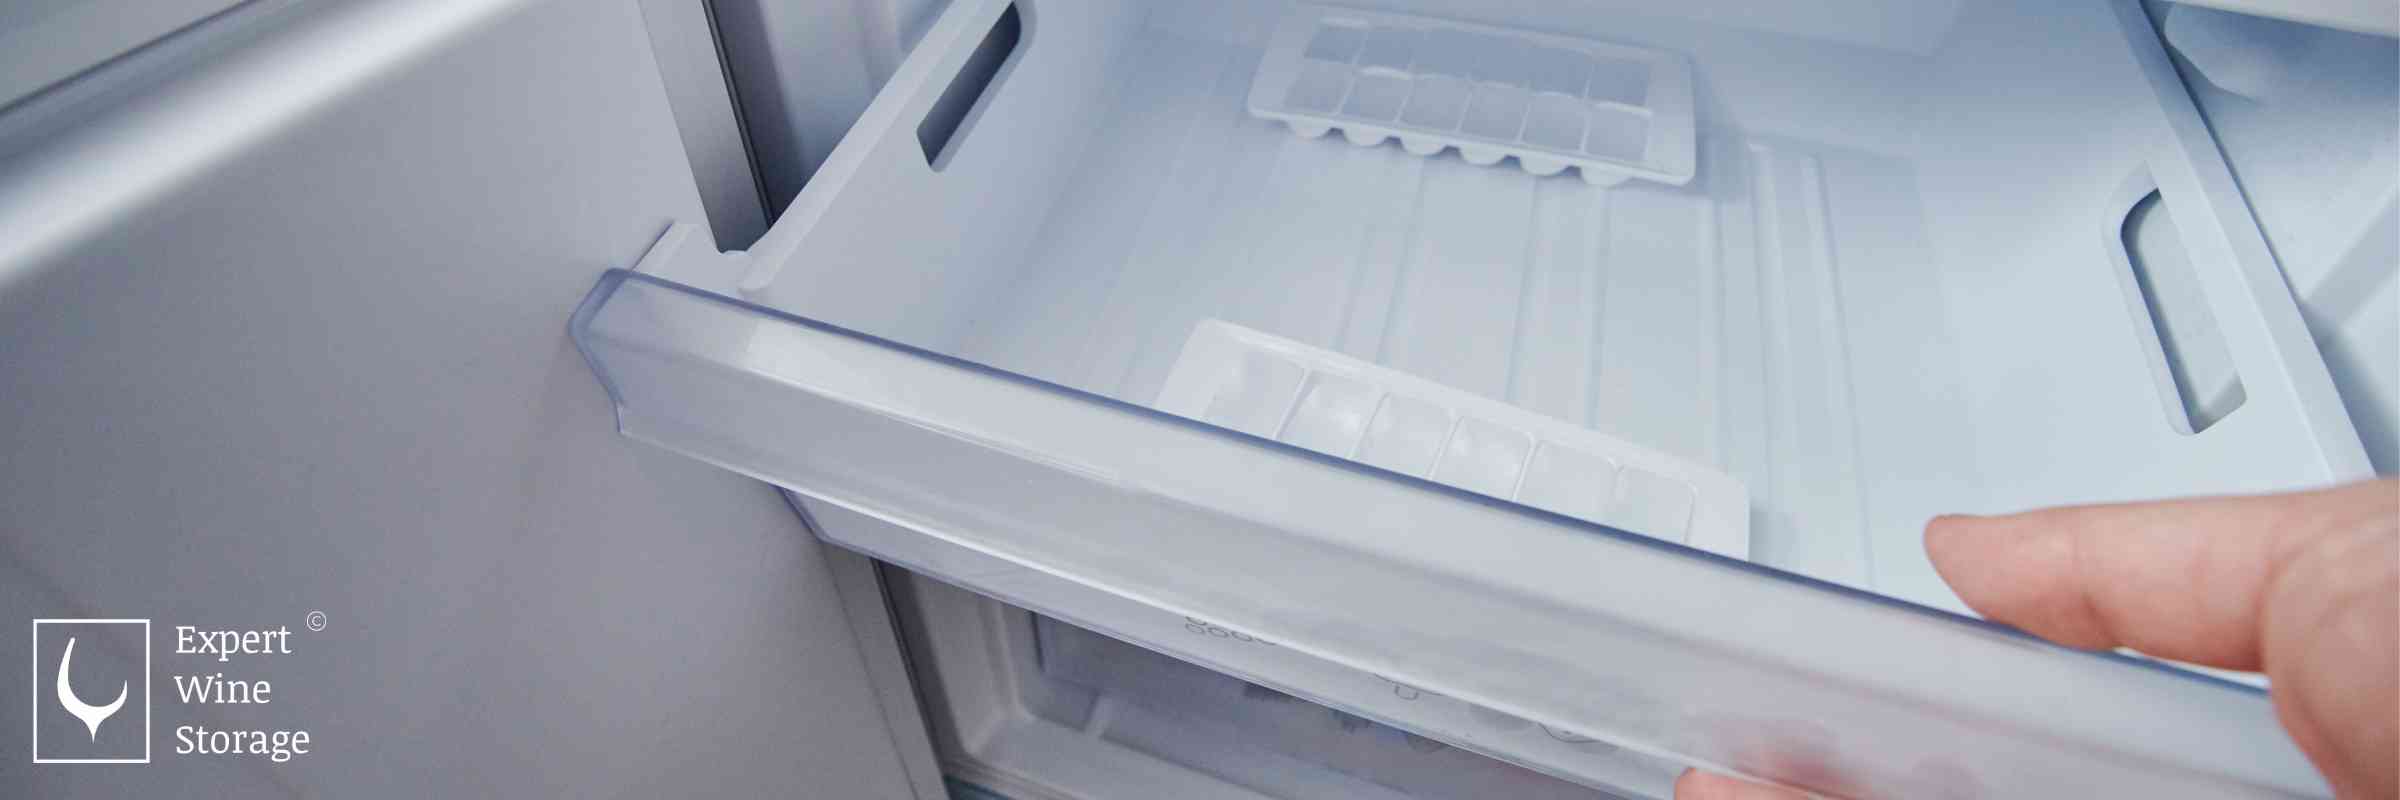 Freezer Drawer